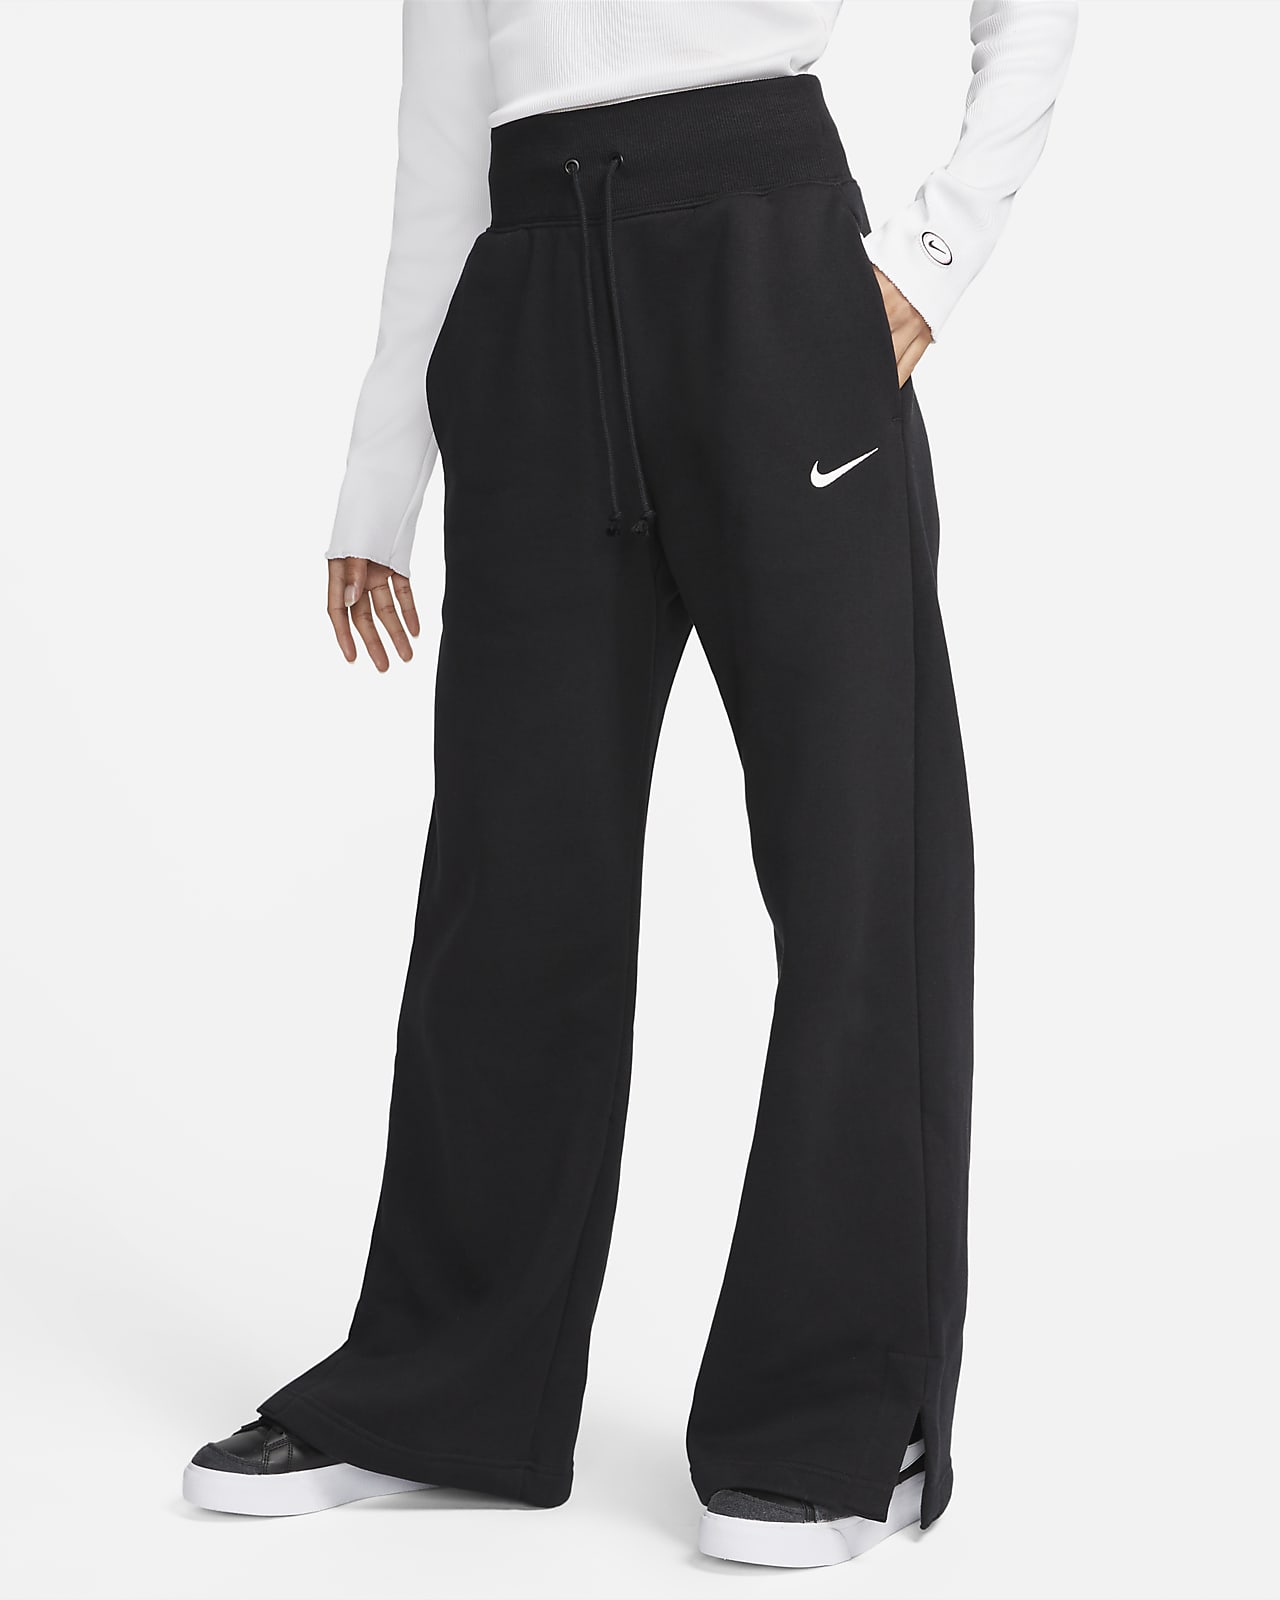 Nike Sportswear Phoenix Fleece magas derekú, széles szárú női polár melegítőnadrág